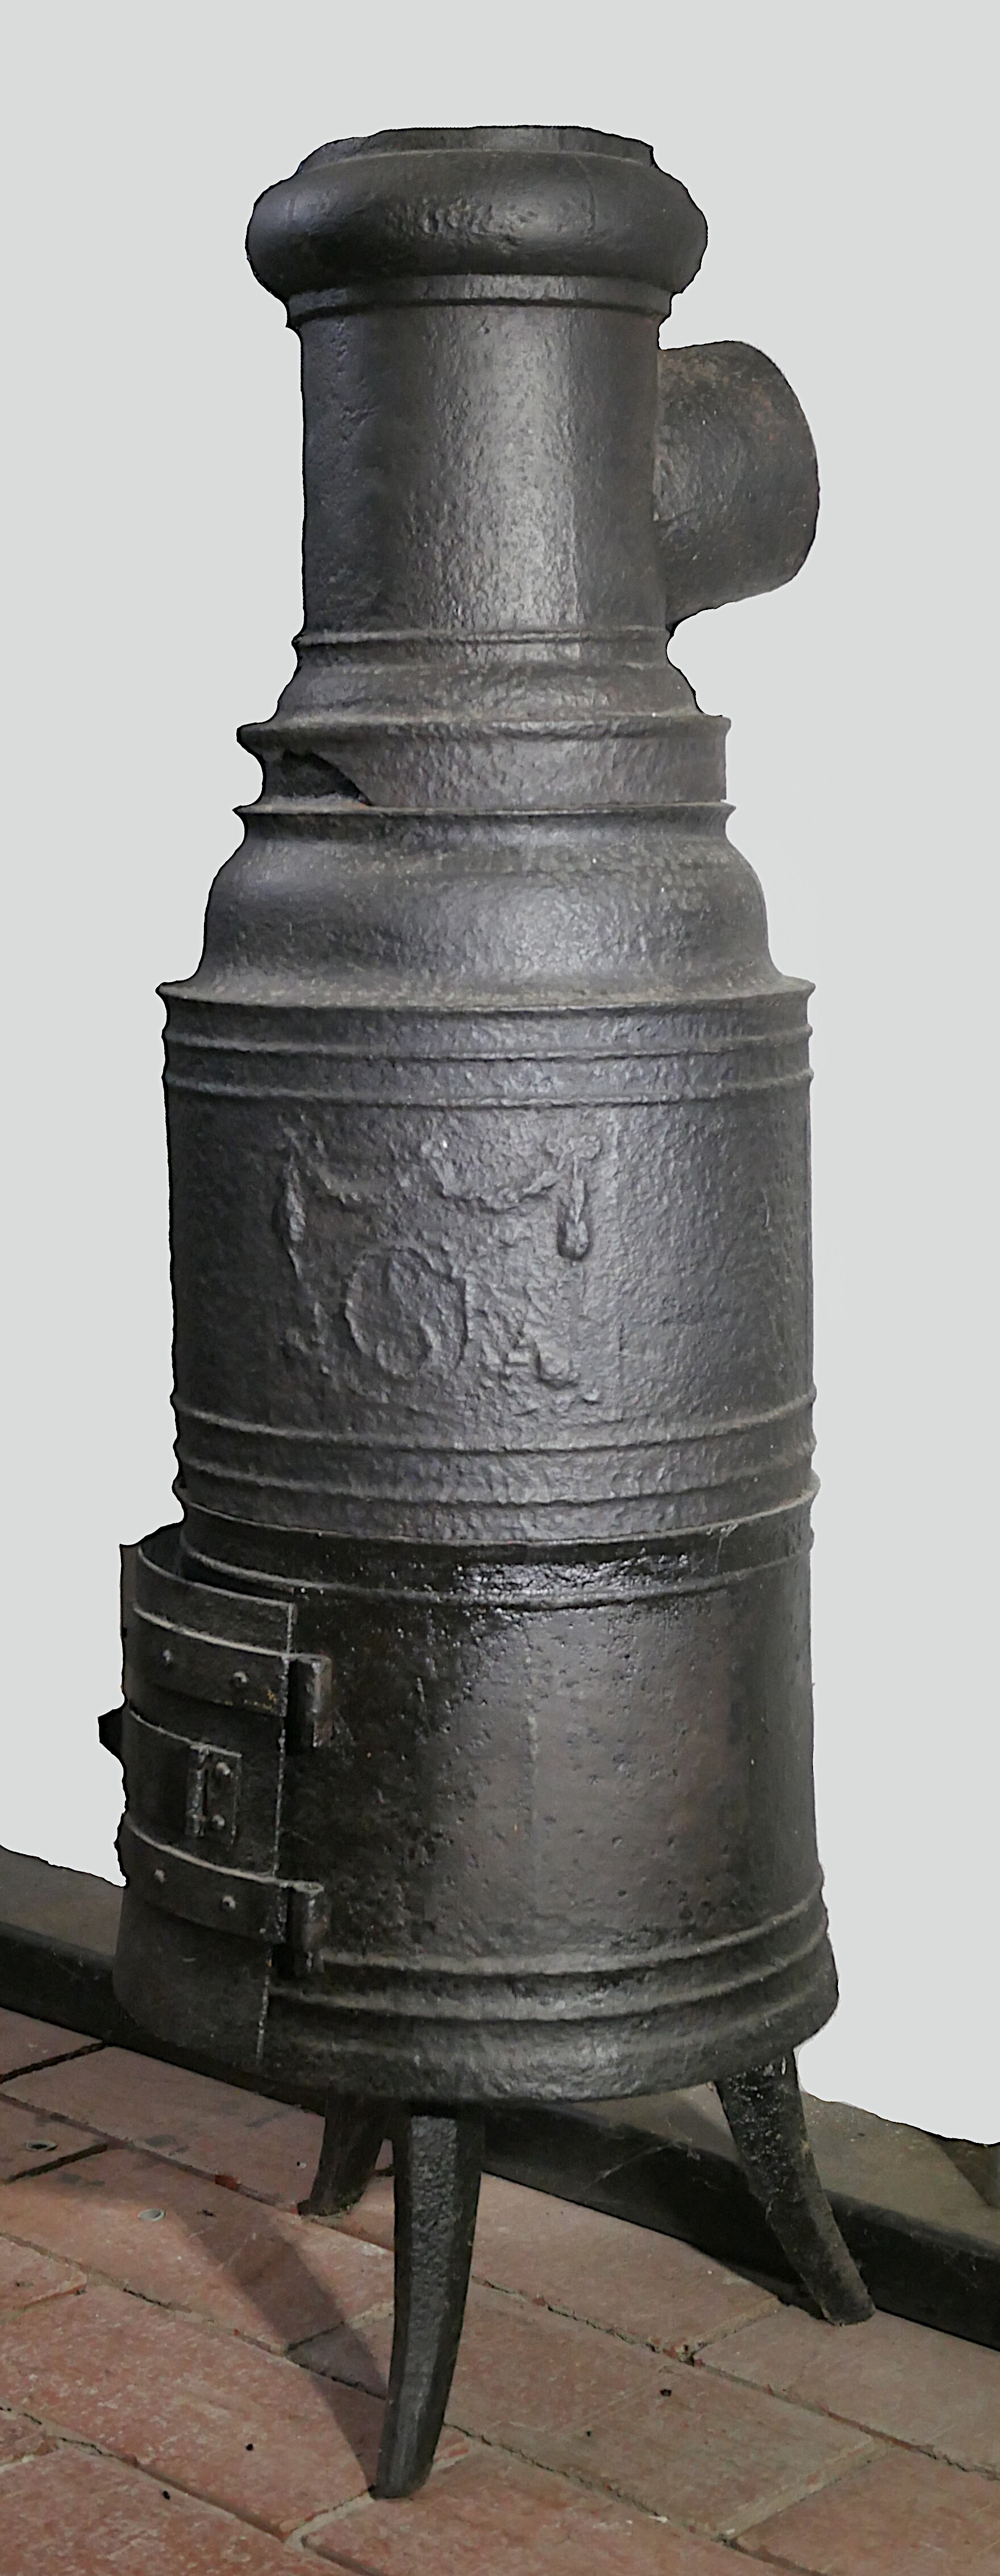 Kleiner Pottofen (Kanonenofen) (Volkskunde- und Freilichtmuseum Roscheider Hof CC0)